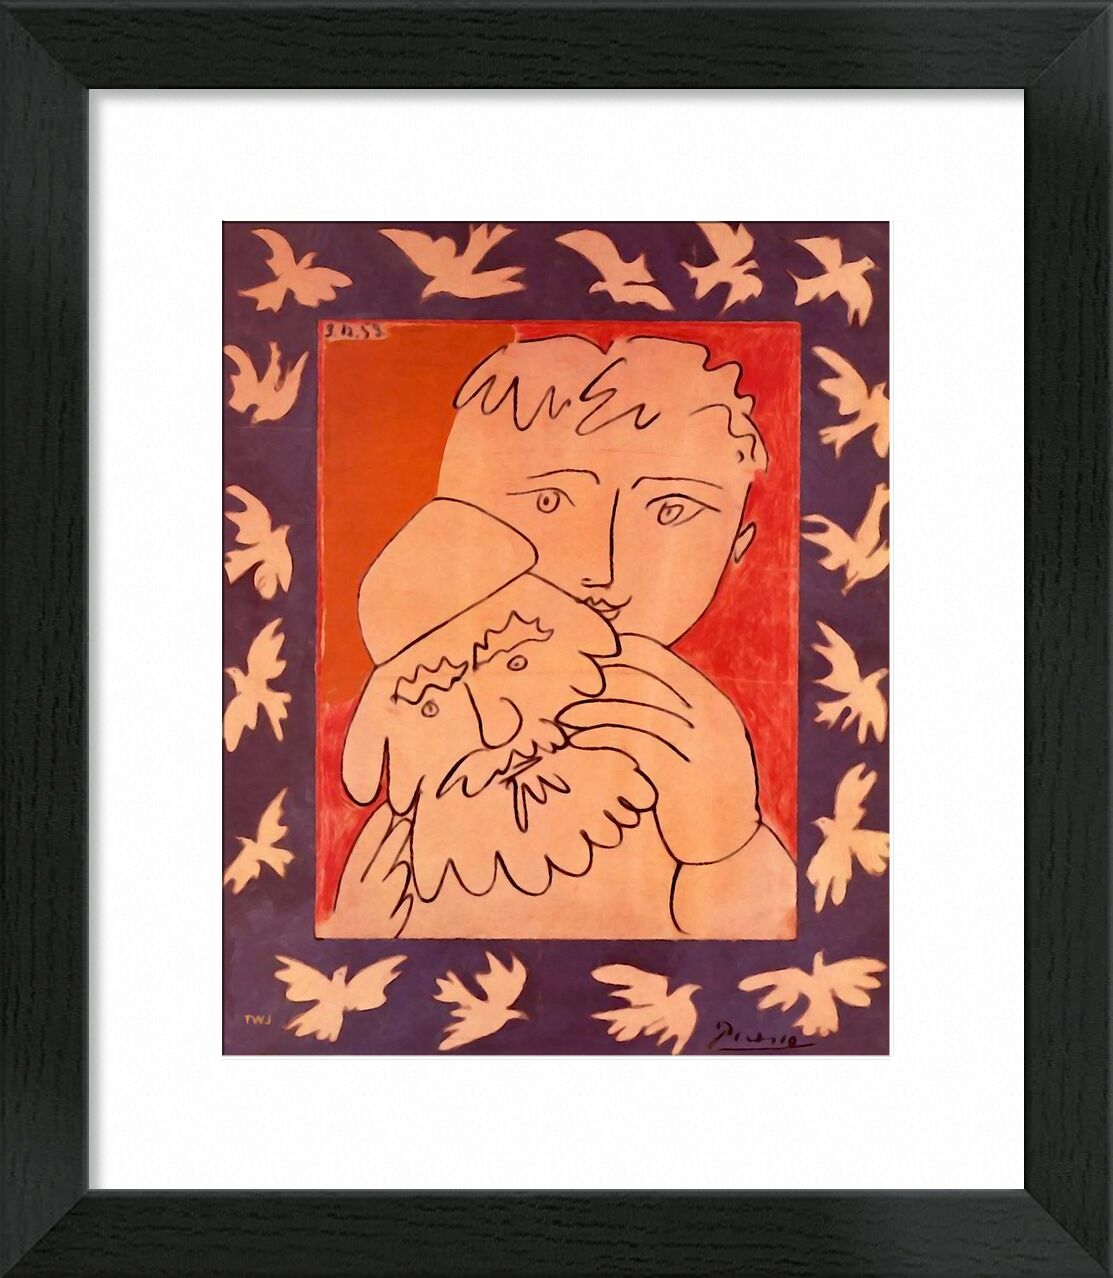 New Year - Picasso von Bildende Kunst, Prodi Art, Neujahr, abstrakt, Malerei, Picasso